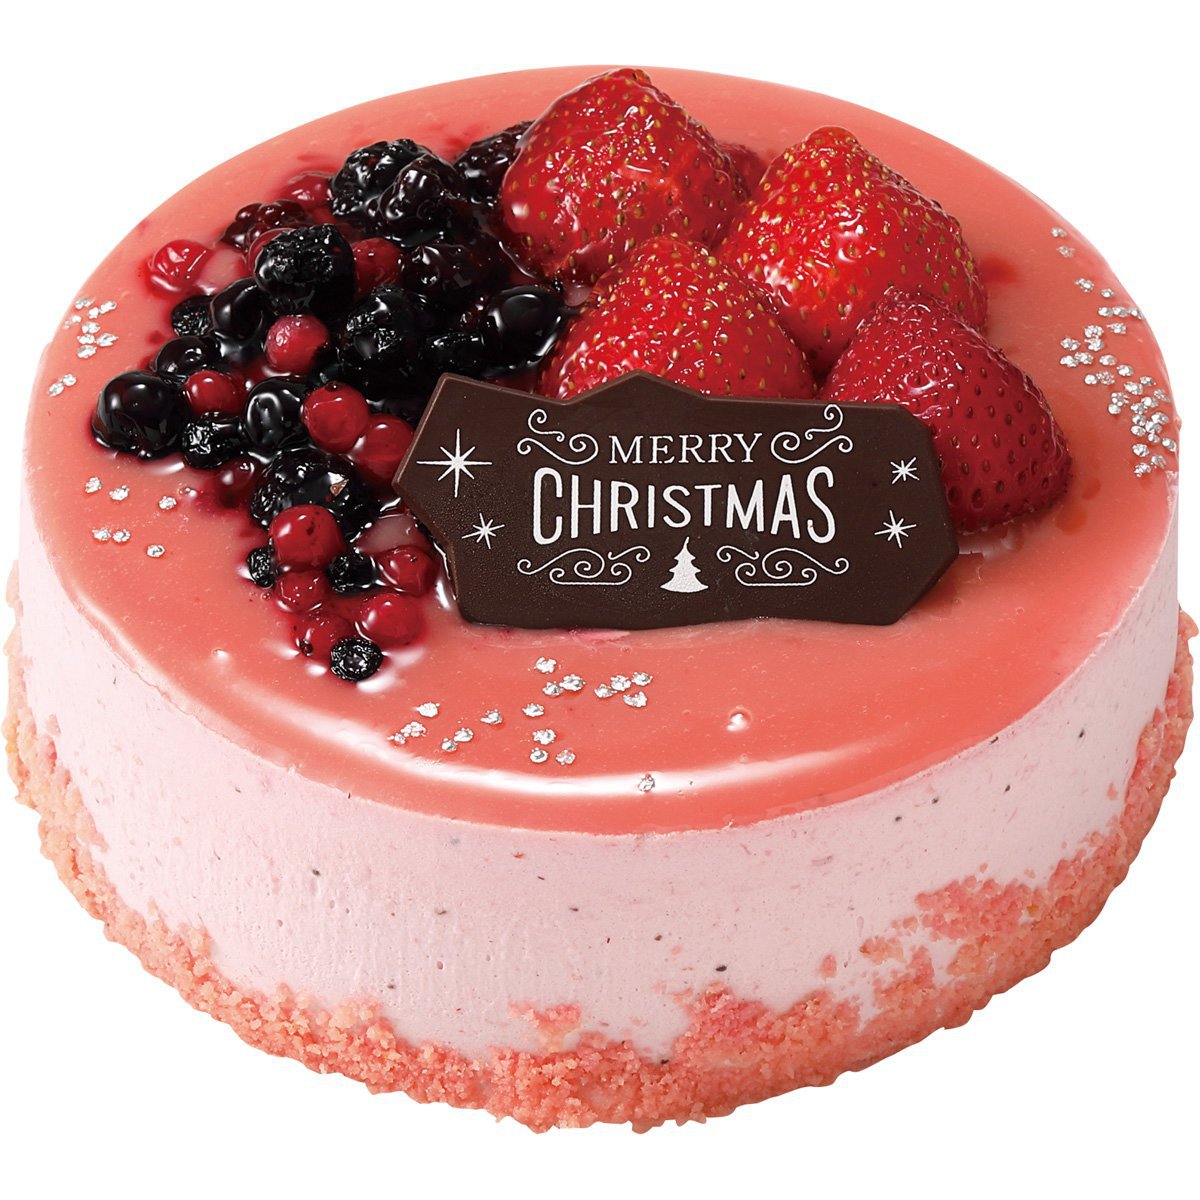 苺のお店 メゾン・ド・フルージュのクリスマスケーキ